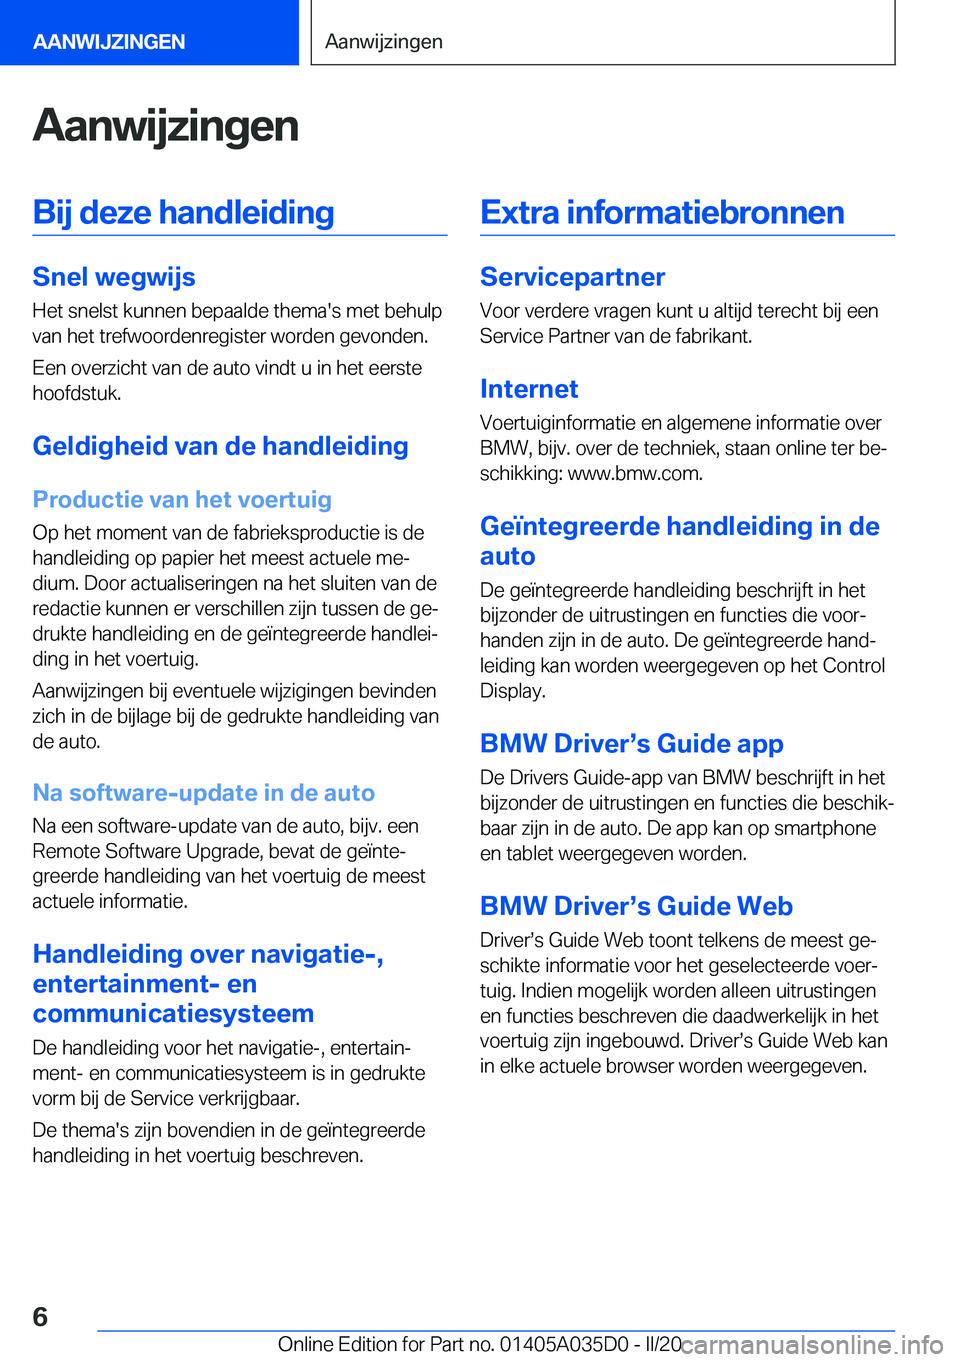 BMW X4 2020  Instructieboekjes (in Dutch) �A�a�n�w�i�j�z�i�n�g�e�n�B�i�j��d�e�z�e��h�a�n�d�l�e�i�d�i�n�g
�S�n�e�l��w�e�g�w�i�j�s
�H�e�t��s�n�e�l�s�t��k�u�n�n�e�n��b�e�p�a�a�l�d�e��t�h�e�m�a�'�s��m�e�t��b�e�h�u�l�p
�v�a�n��h�e�t�